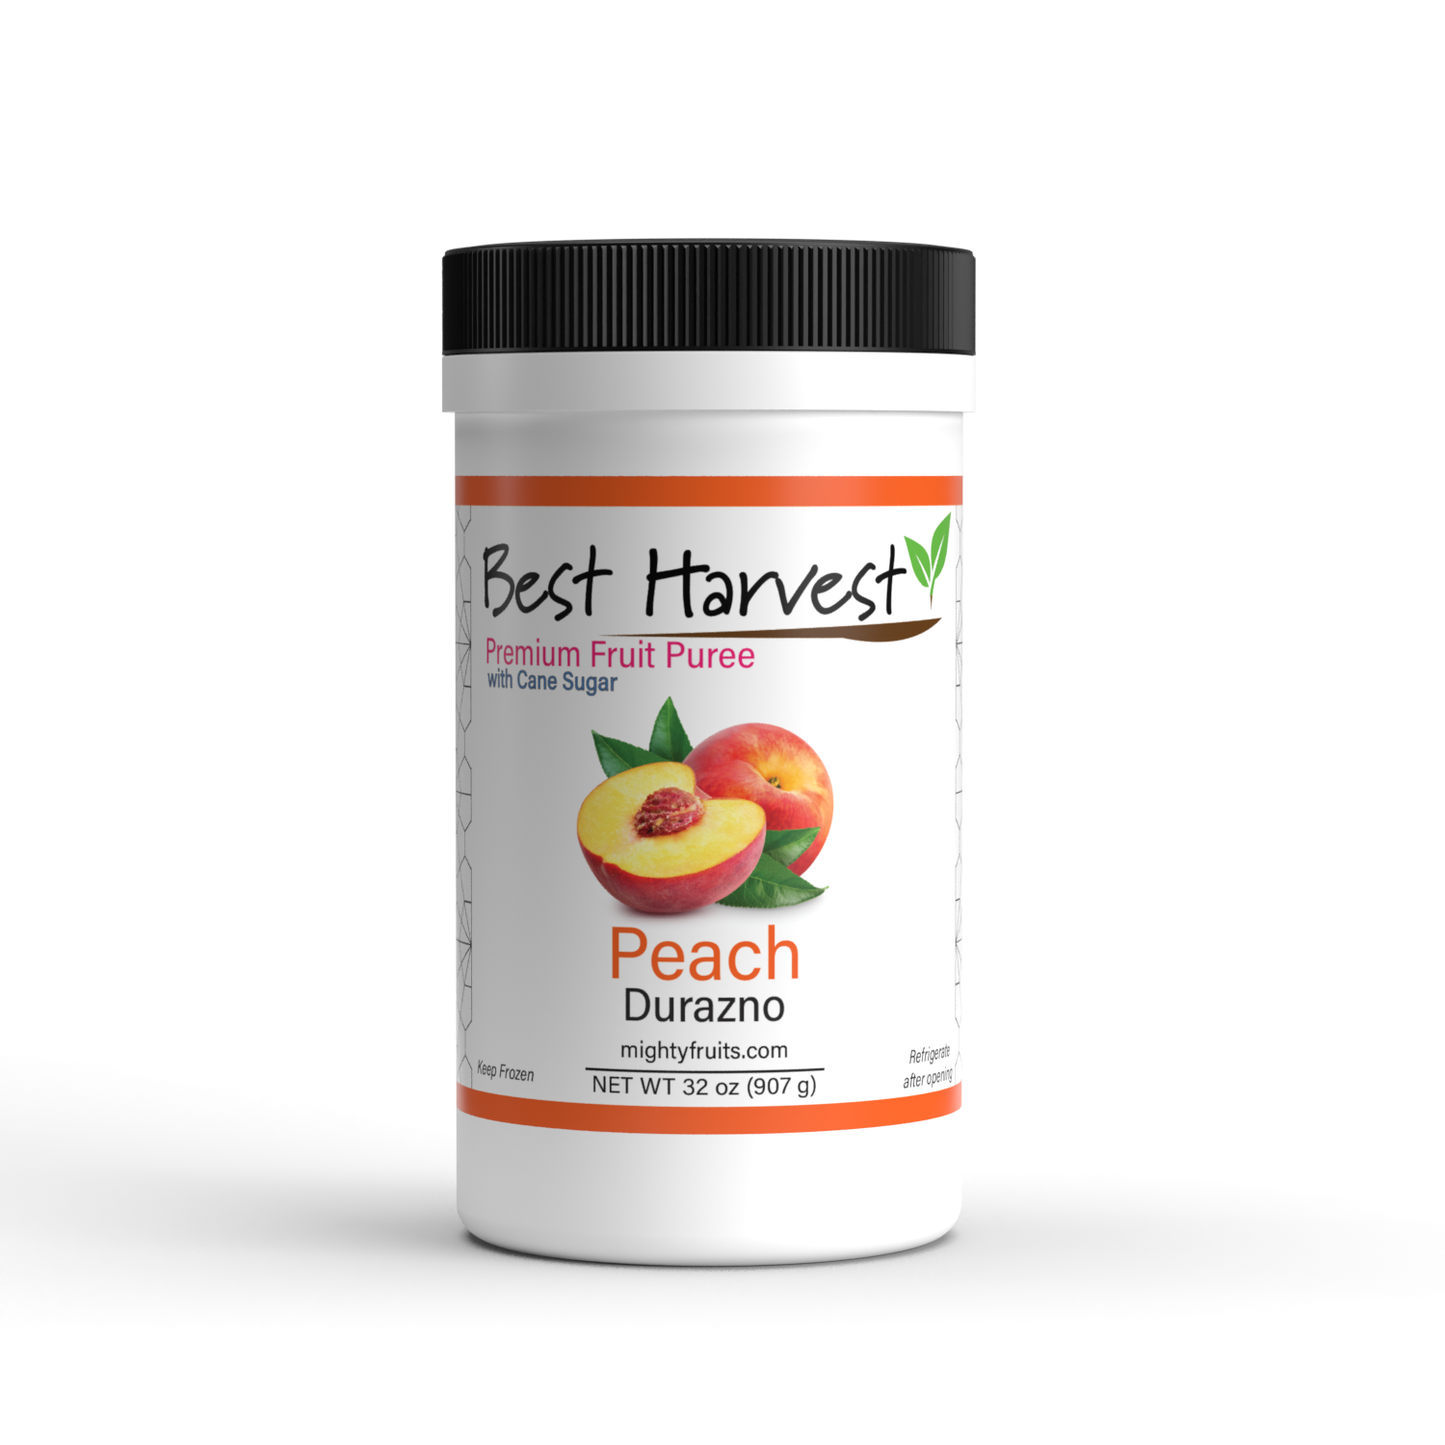 PEACH - BEST HARVEST - Premium Fruit Puree